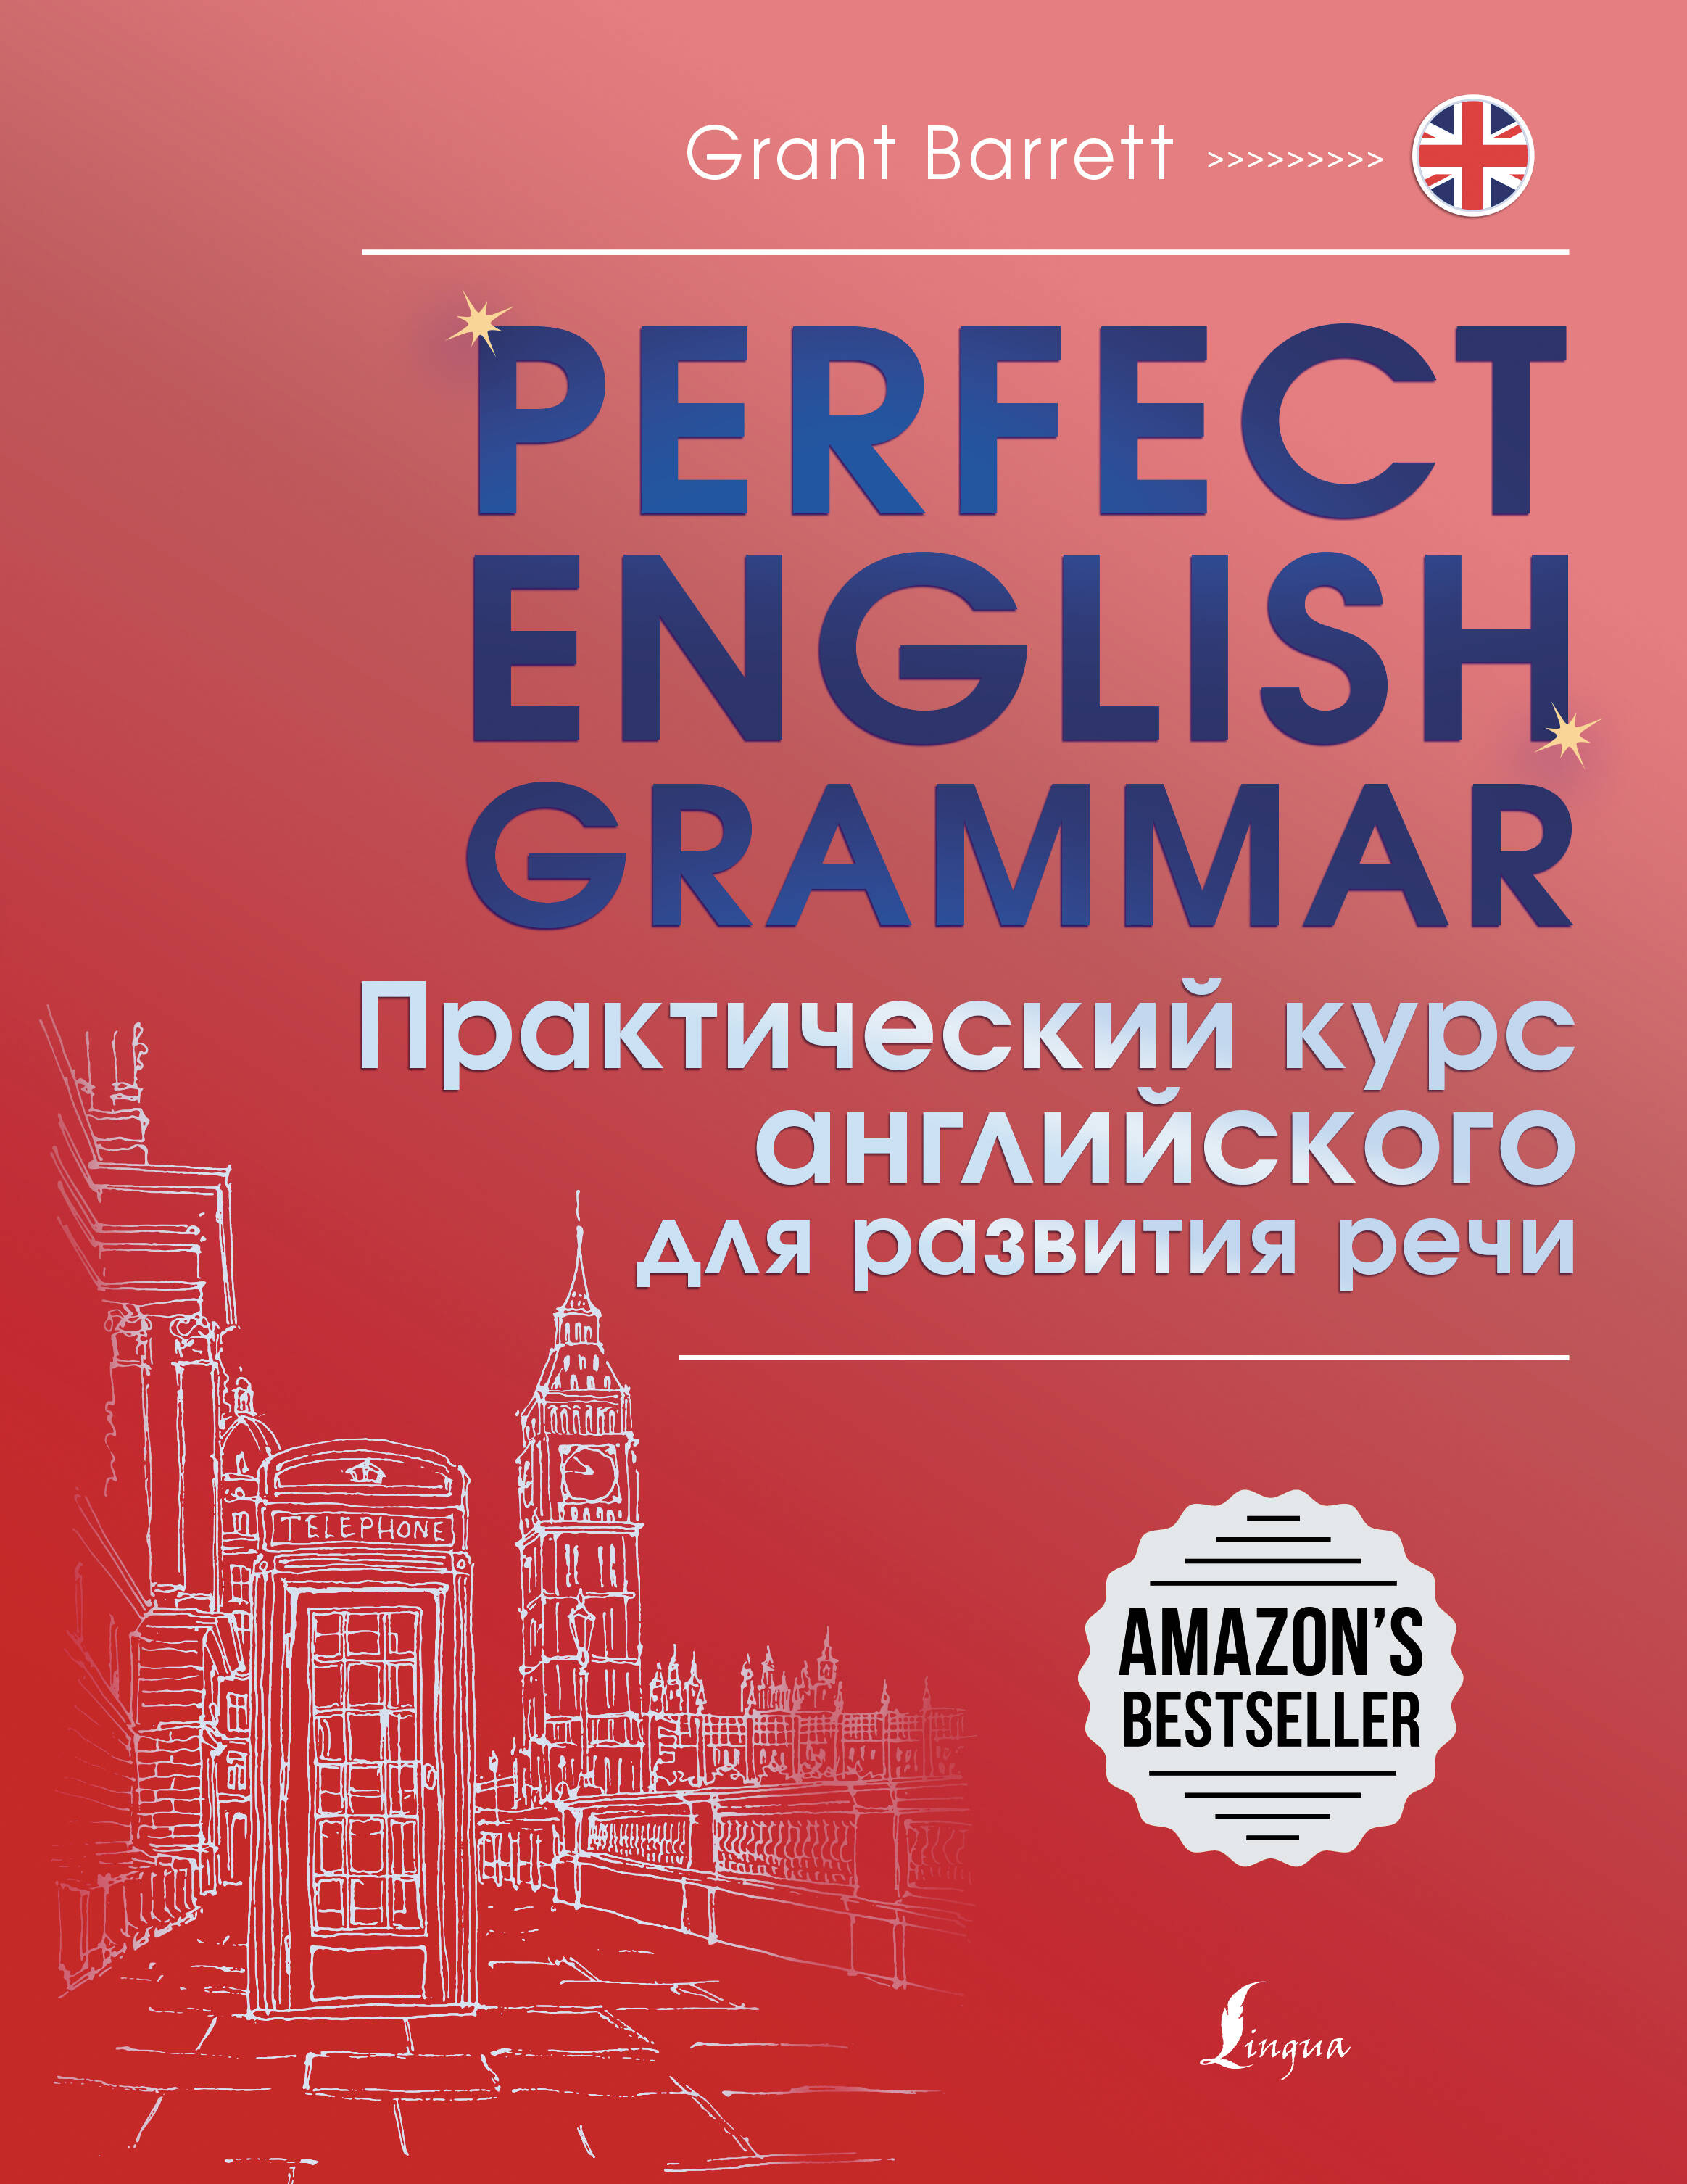 Perfect English Grammar. Практический курс английского для развития речи dictionary of modern slang